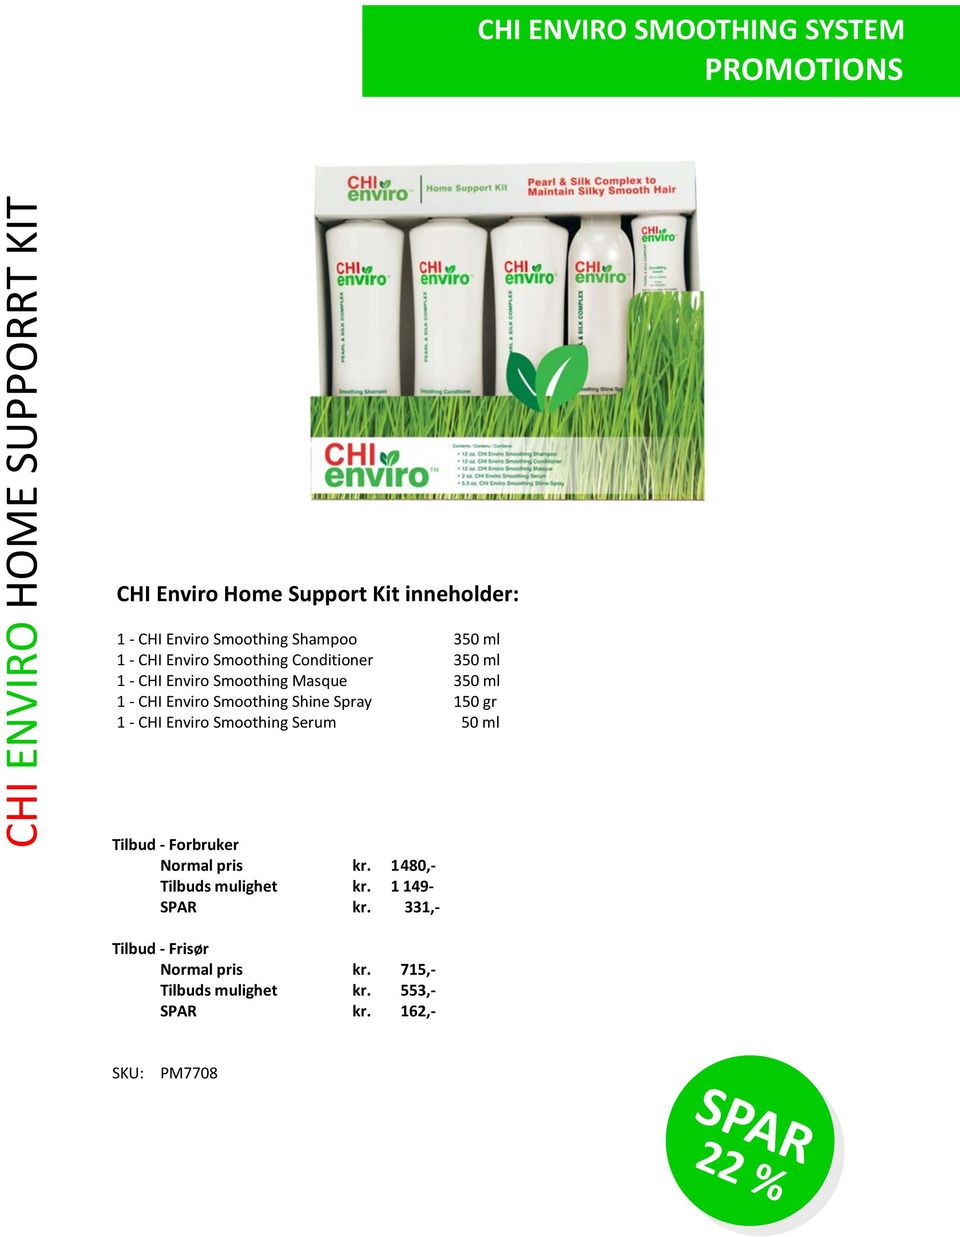 Spray 150 gr 1 - CHI Enviro Smoothing Serum 50 ml Tilbud - Forbruker Normal pris kr. 1480,- Tilbuds mulighet kr.